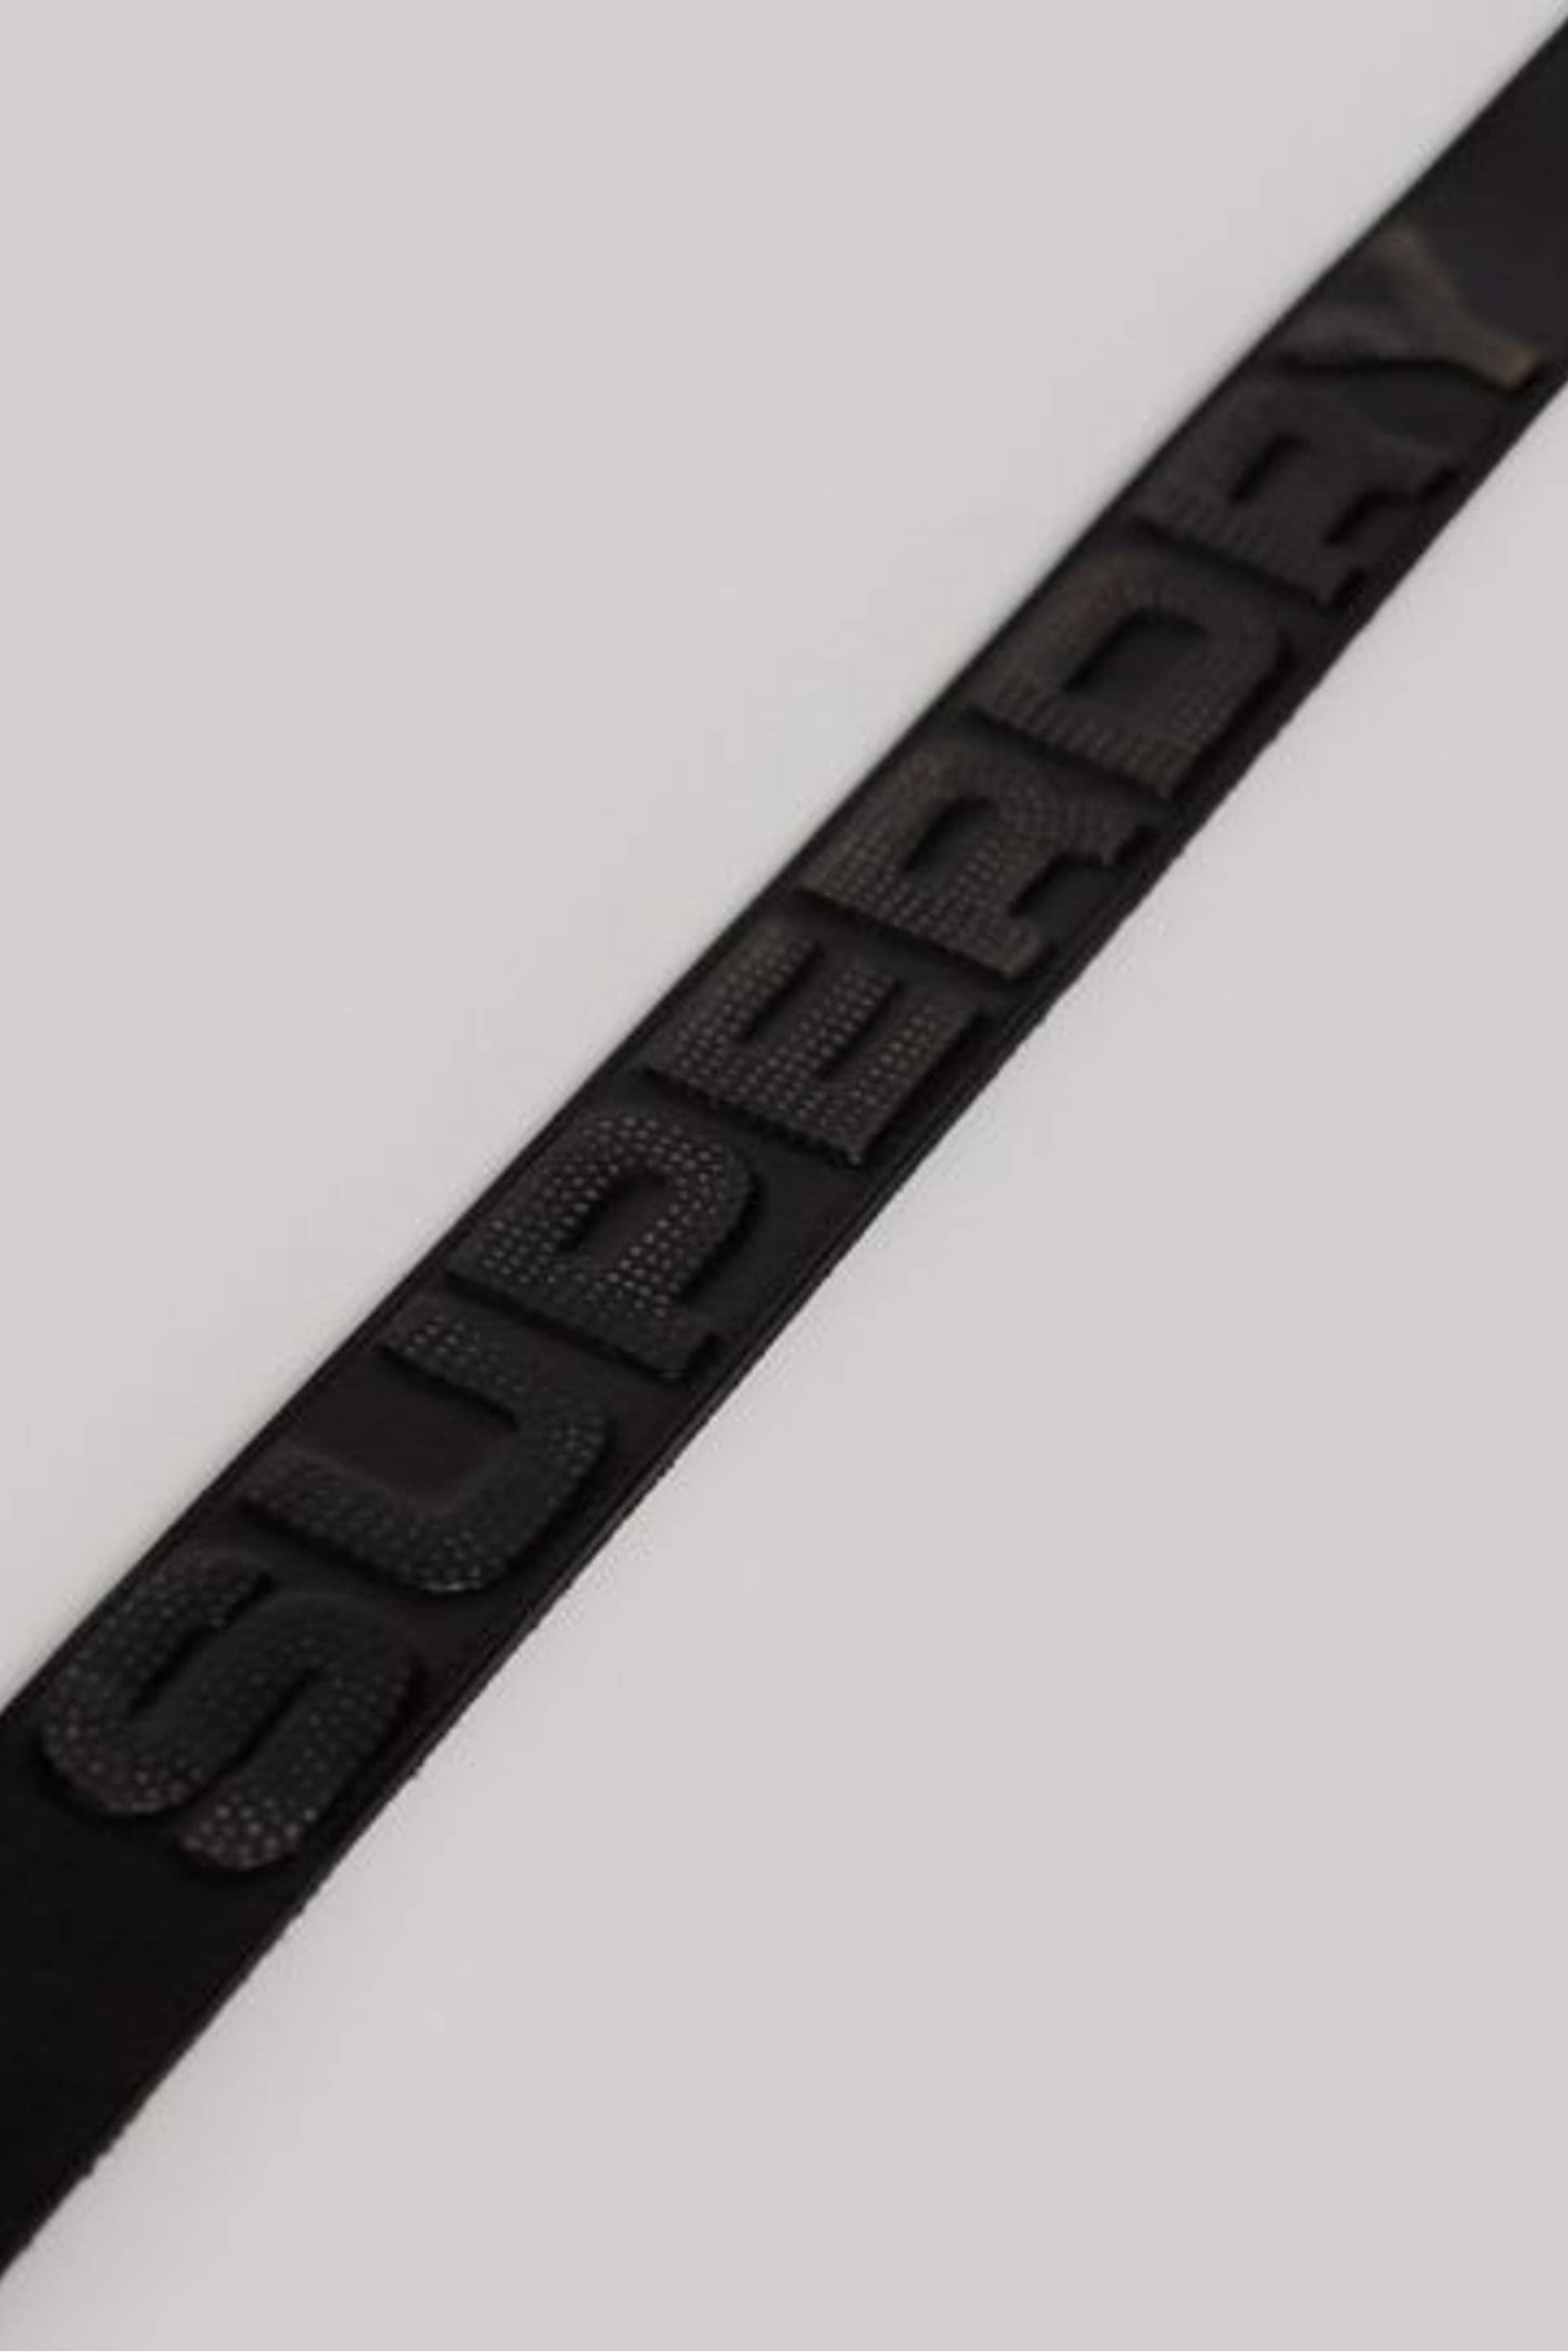 Superdry Black Chrome Vintage Branded Belt - Image 3 of 3